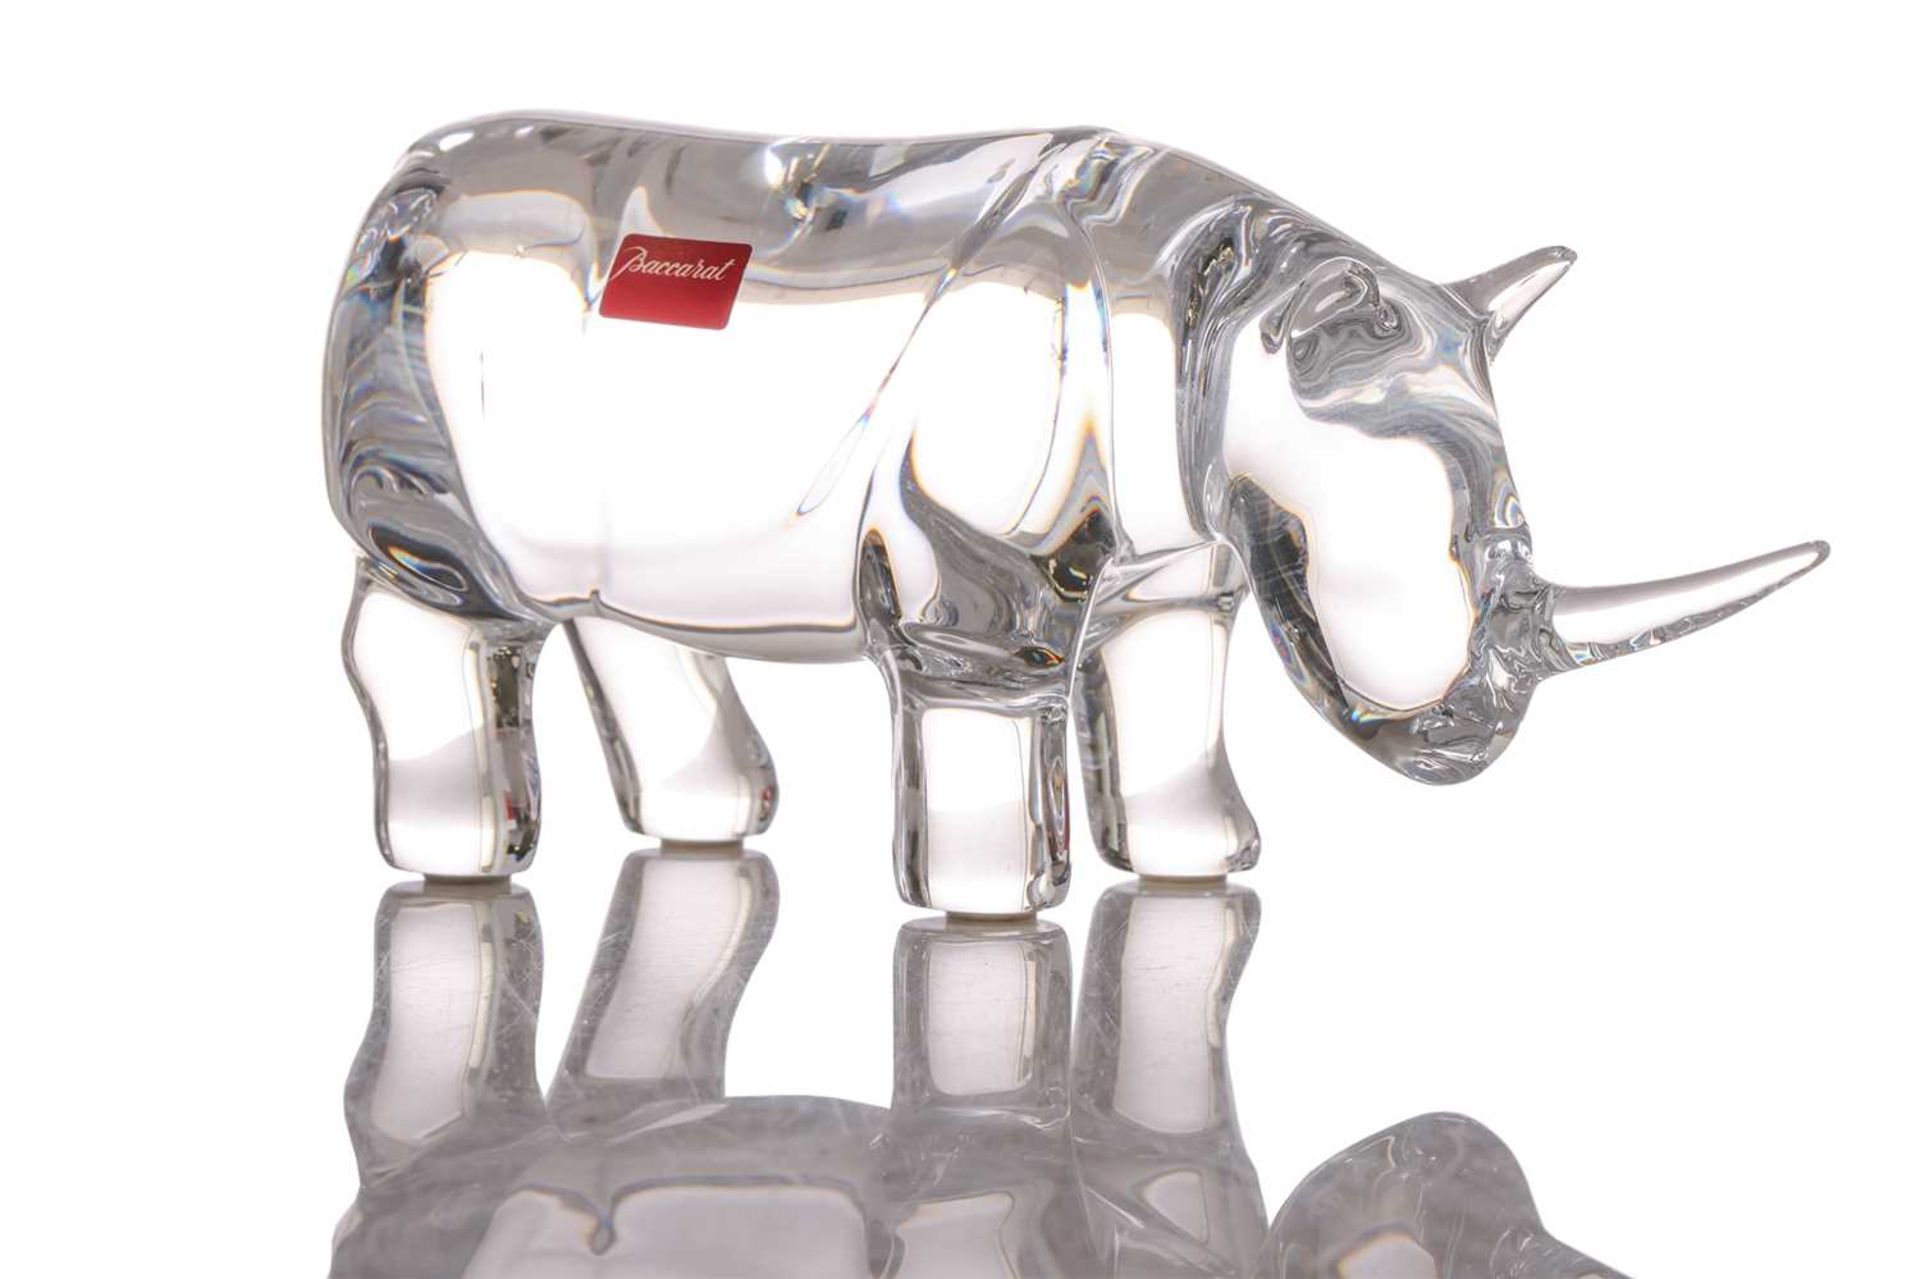 A Baccarat crystal glass figure of a rhinoceros, 8.5 cm x 18.5 cm, in original box.